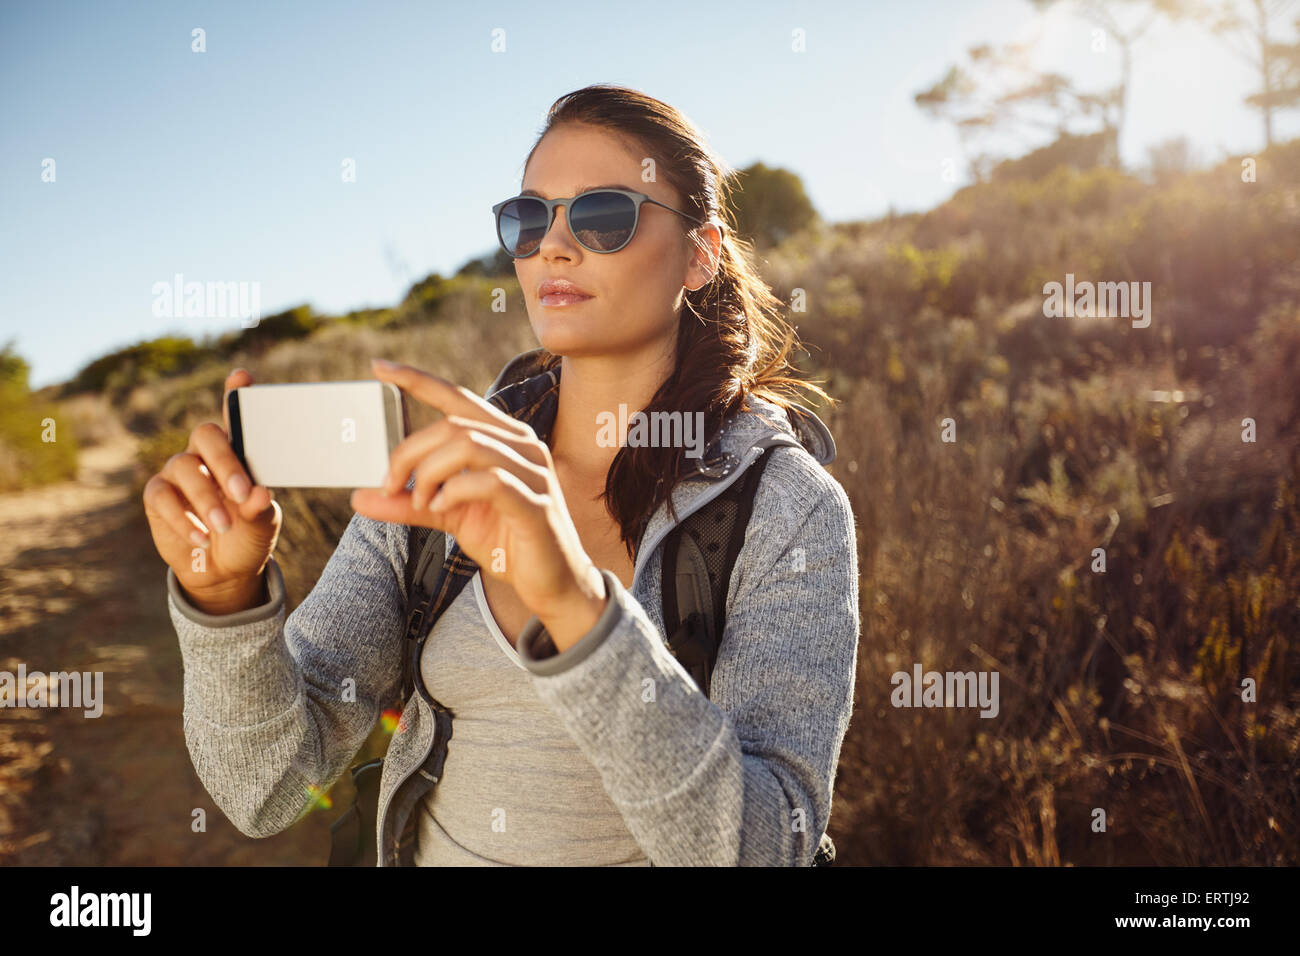 Jeune femme randonneuse prenant des photos avec son téléphone portable. Caucasian woman photographing landscape with smartphone. Banque D'Images